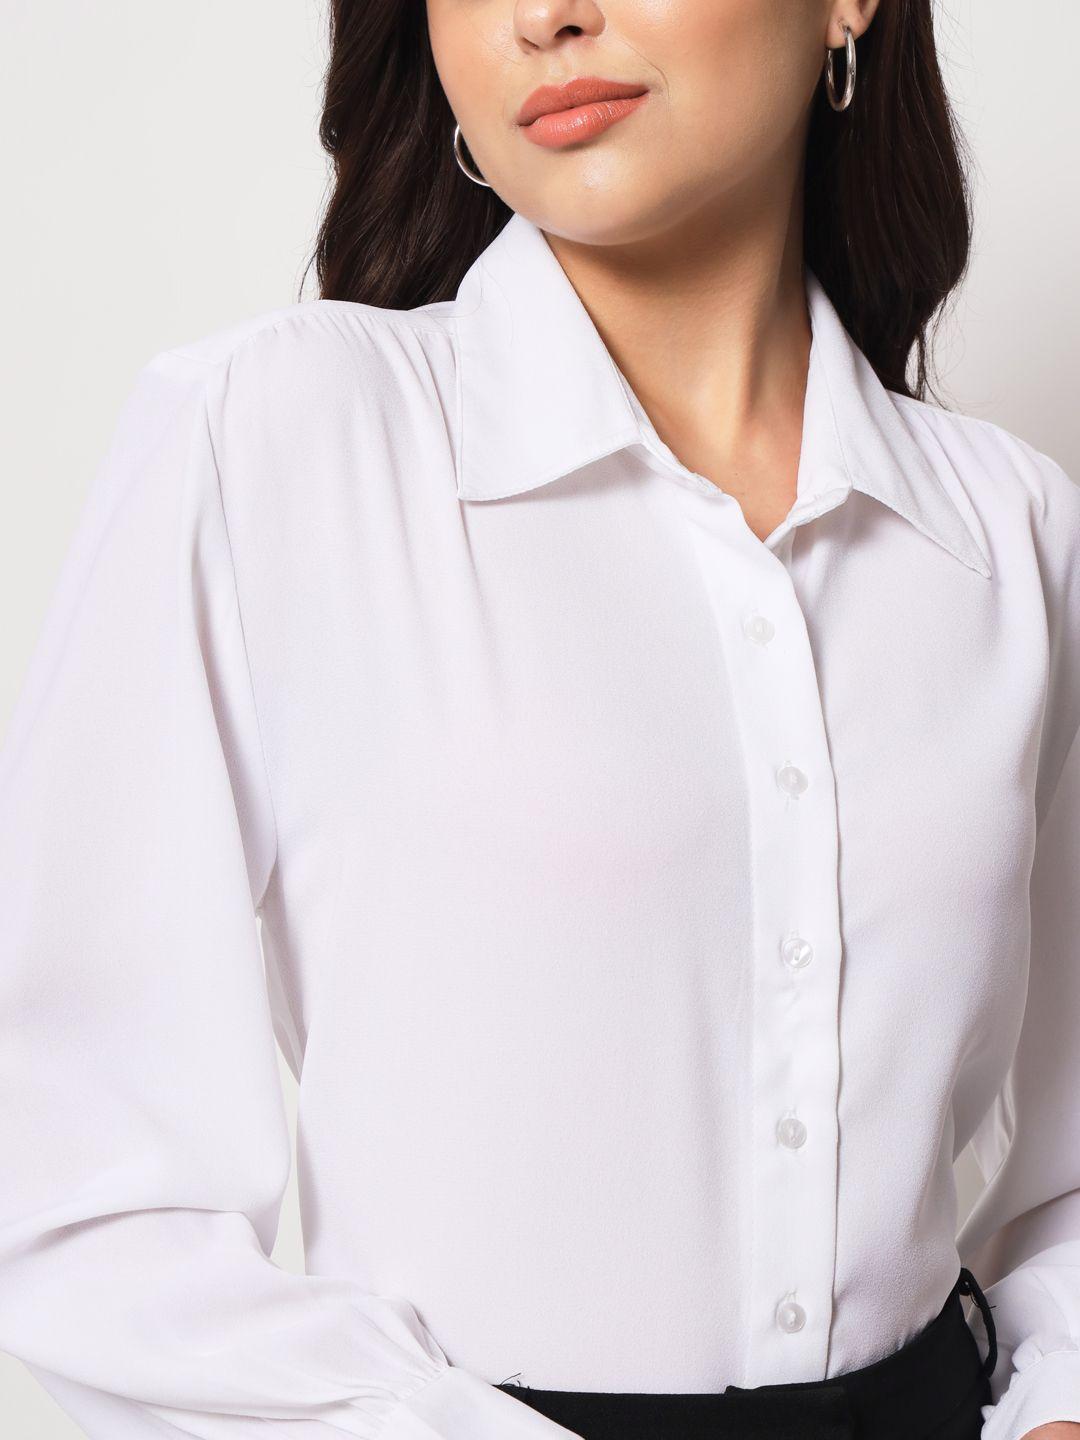 TRENDARREST Women's Polyester White Long Sleeve Shirt